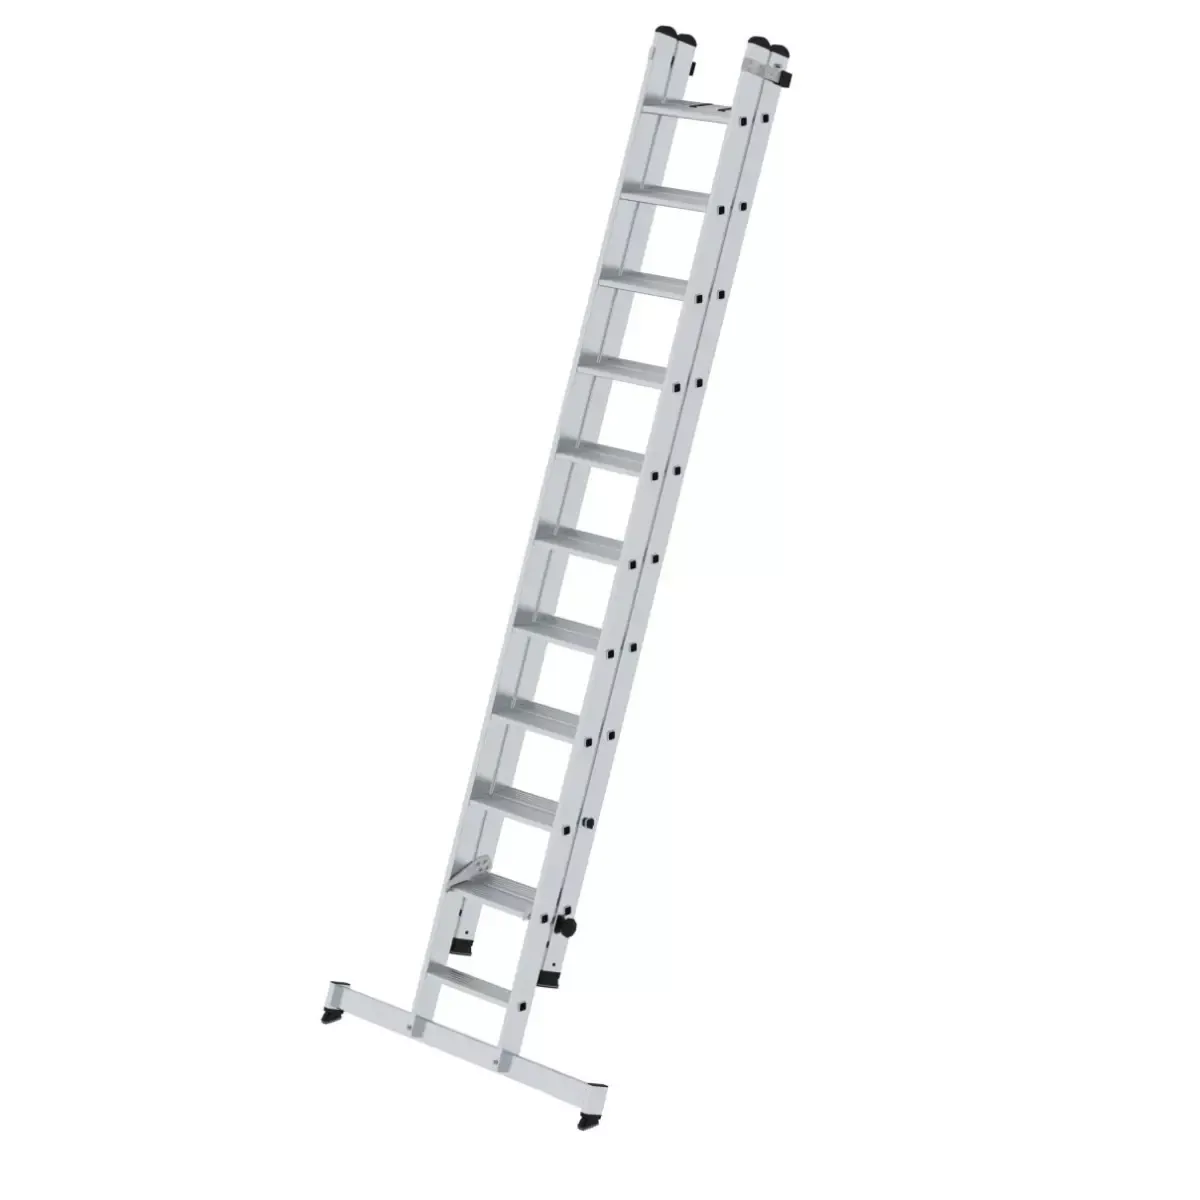 Stufen-Schiebeleiter 2-teilig mit nivello®-Traverse 1x11 + 1x10 Stufen